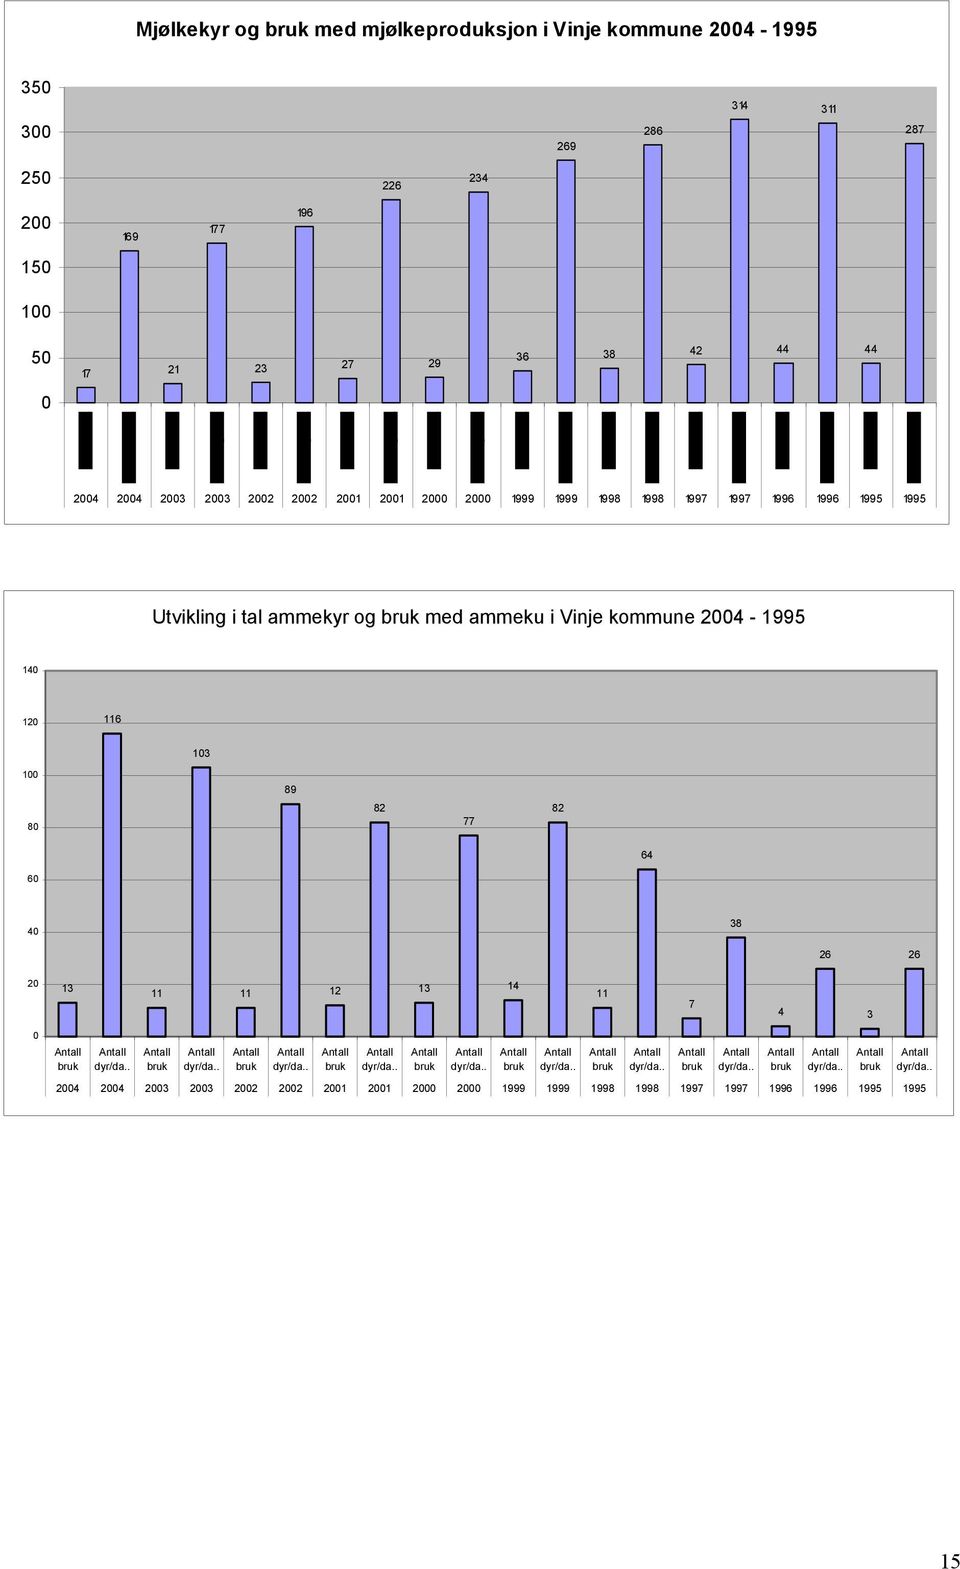 1995 Utvikling i tal ammekyr og med ammeku i Vinje kommune 24-1995 14 12 116 13 1 89 8 82 77 82 64 6 4 38 26